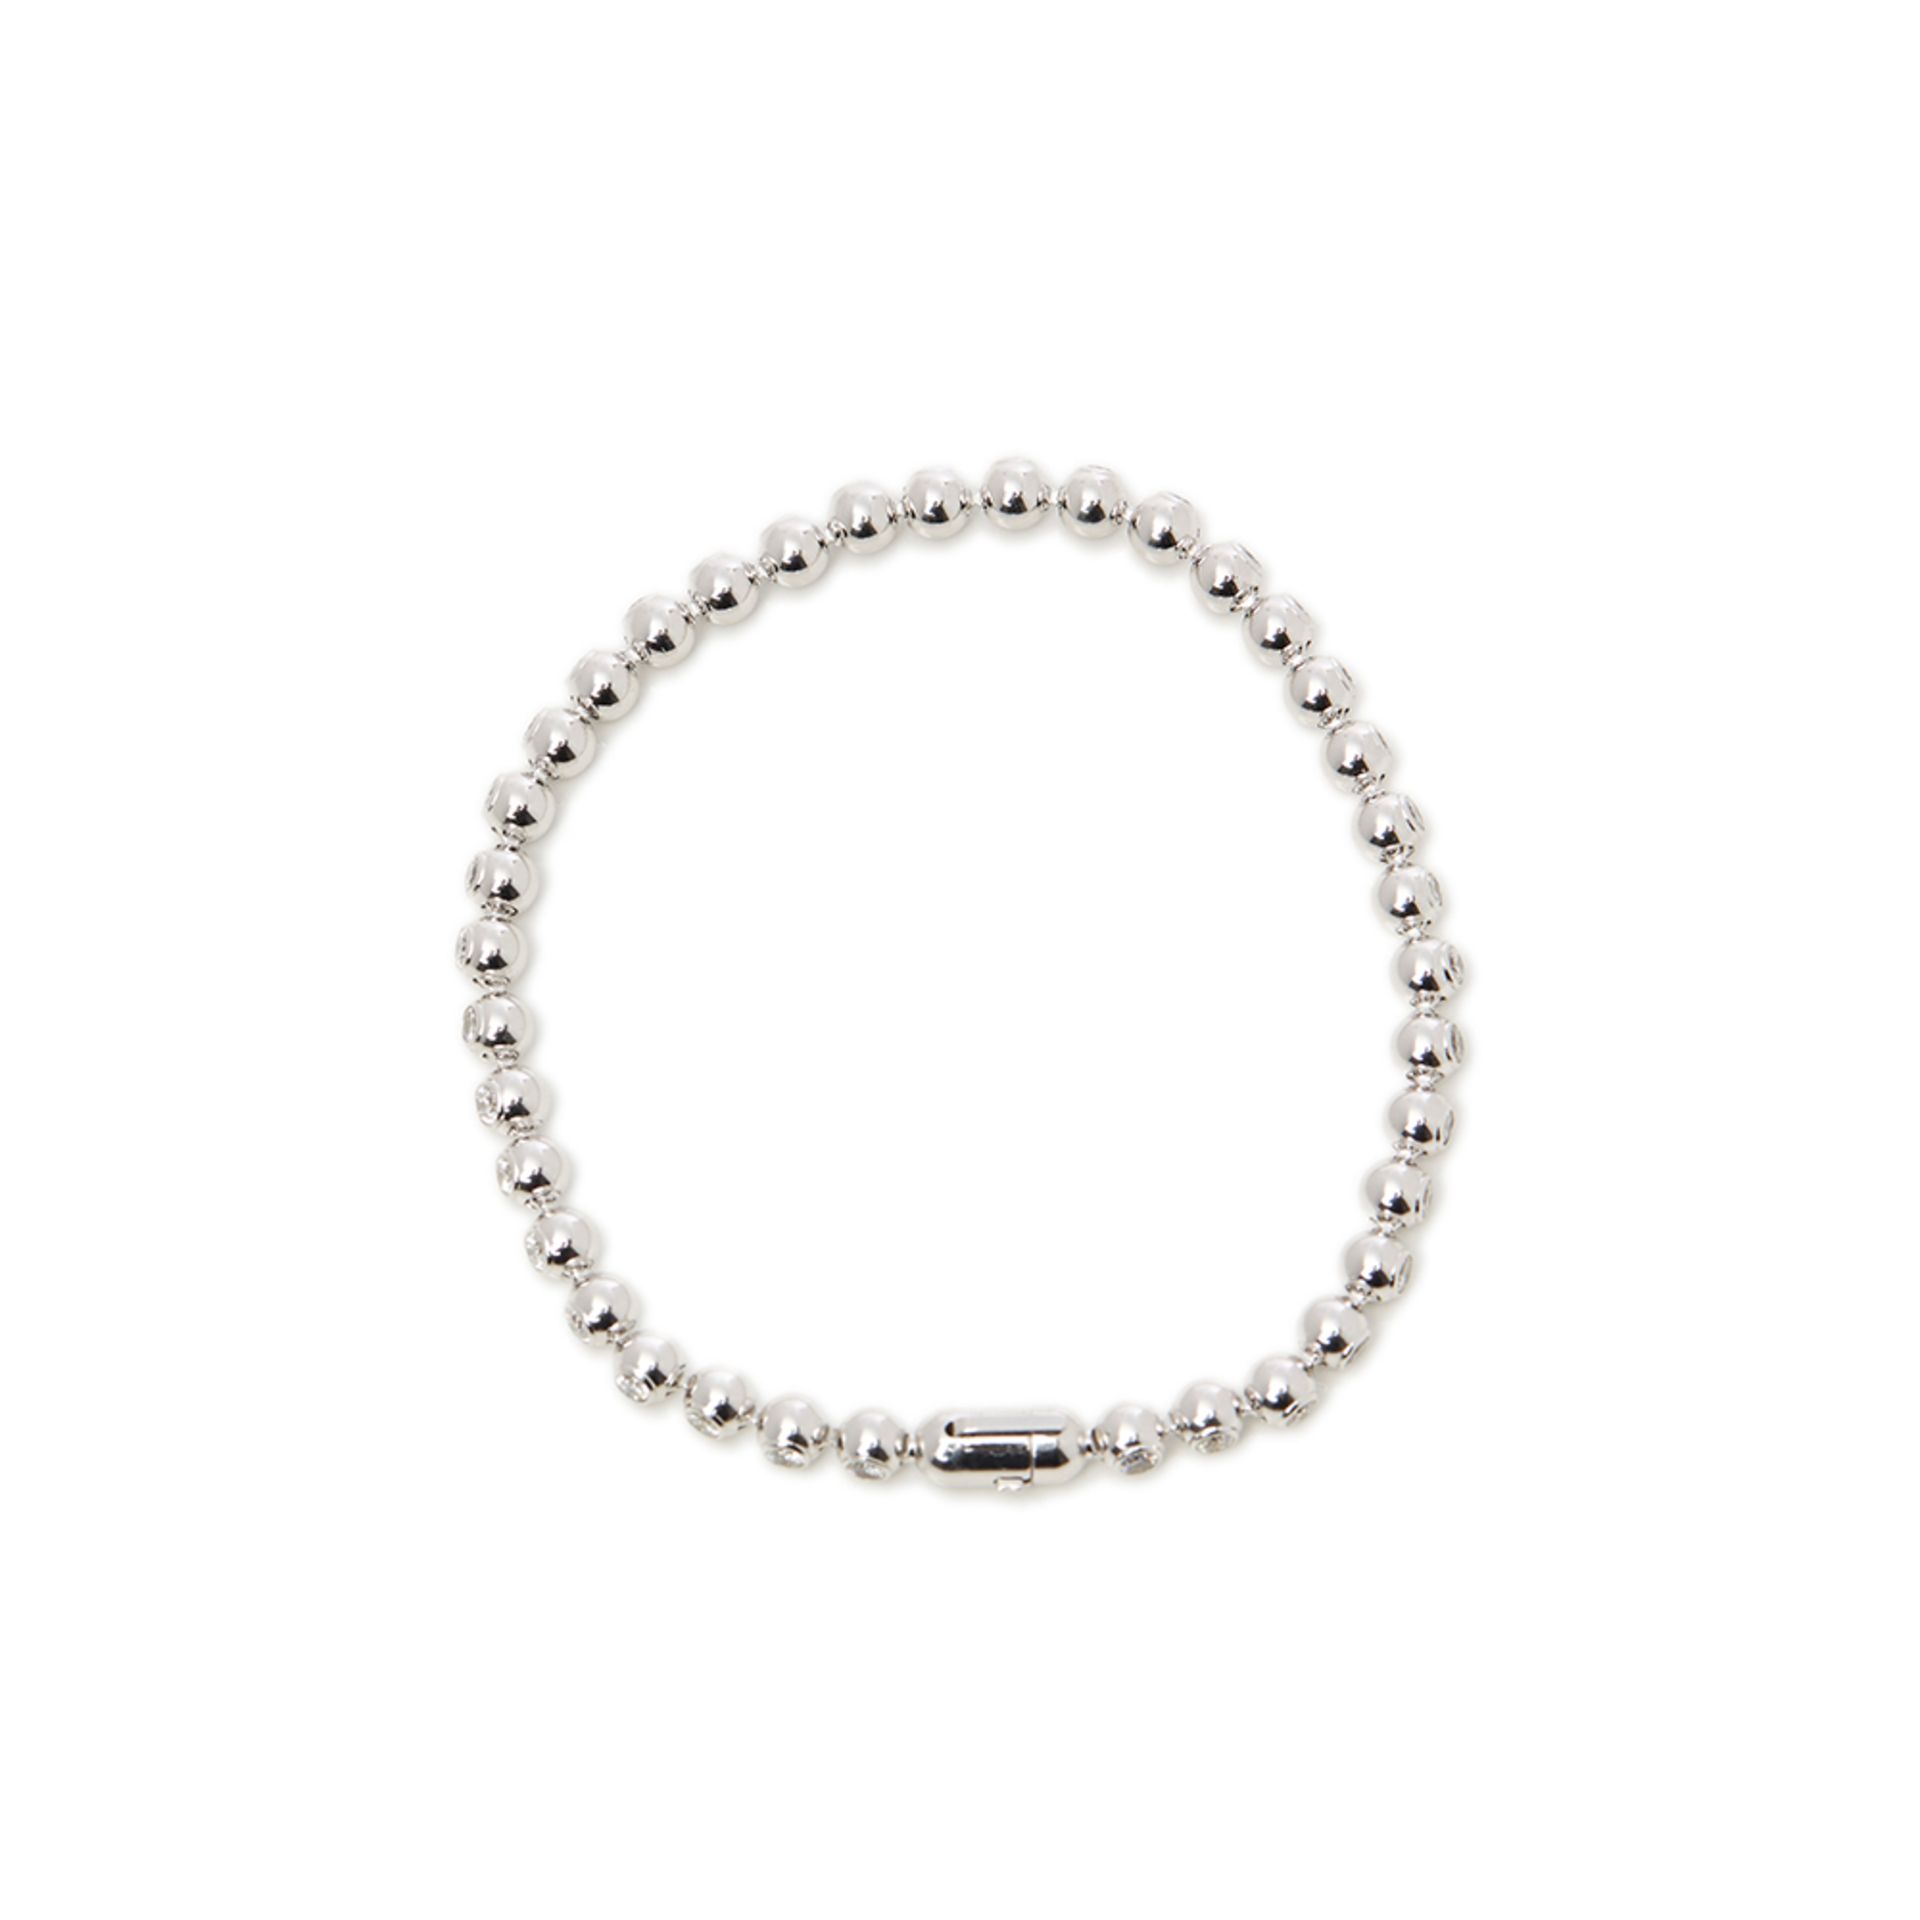 Cartier 18k White Gold Perles de Diamants Bracelet - Image 2 of 8